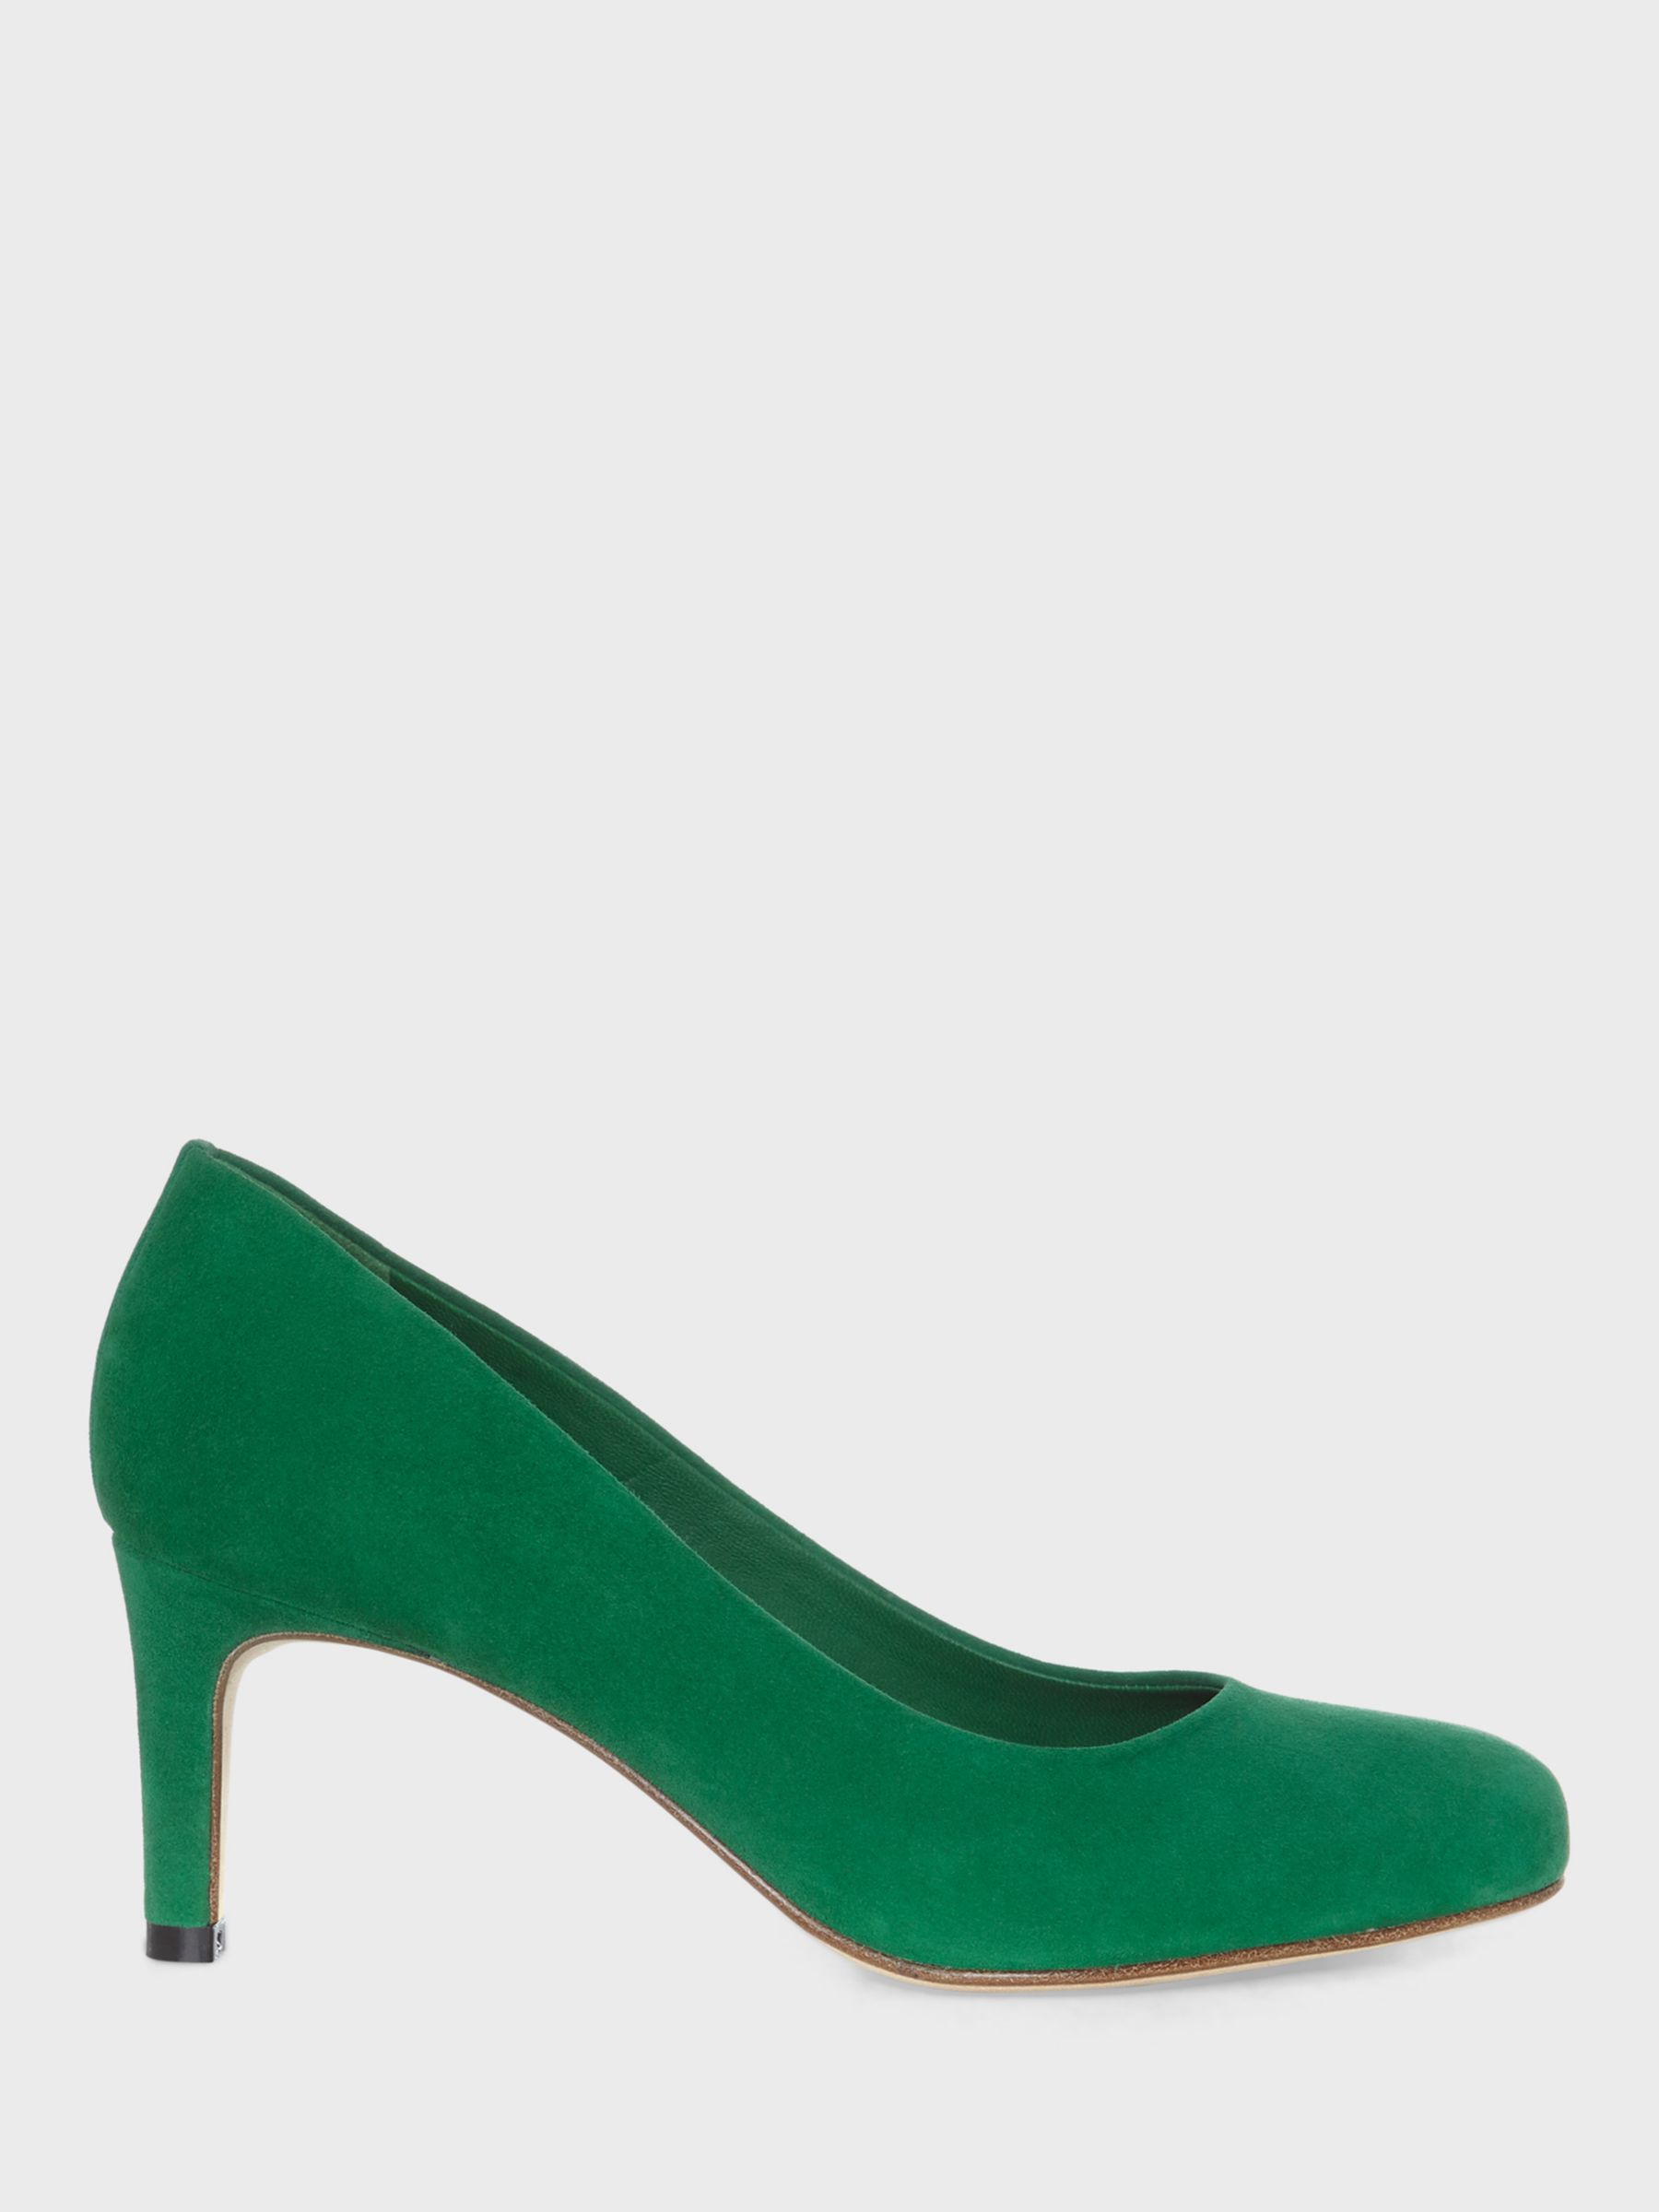 17+ Green Women'S Dress Shoes